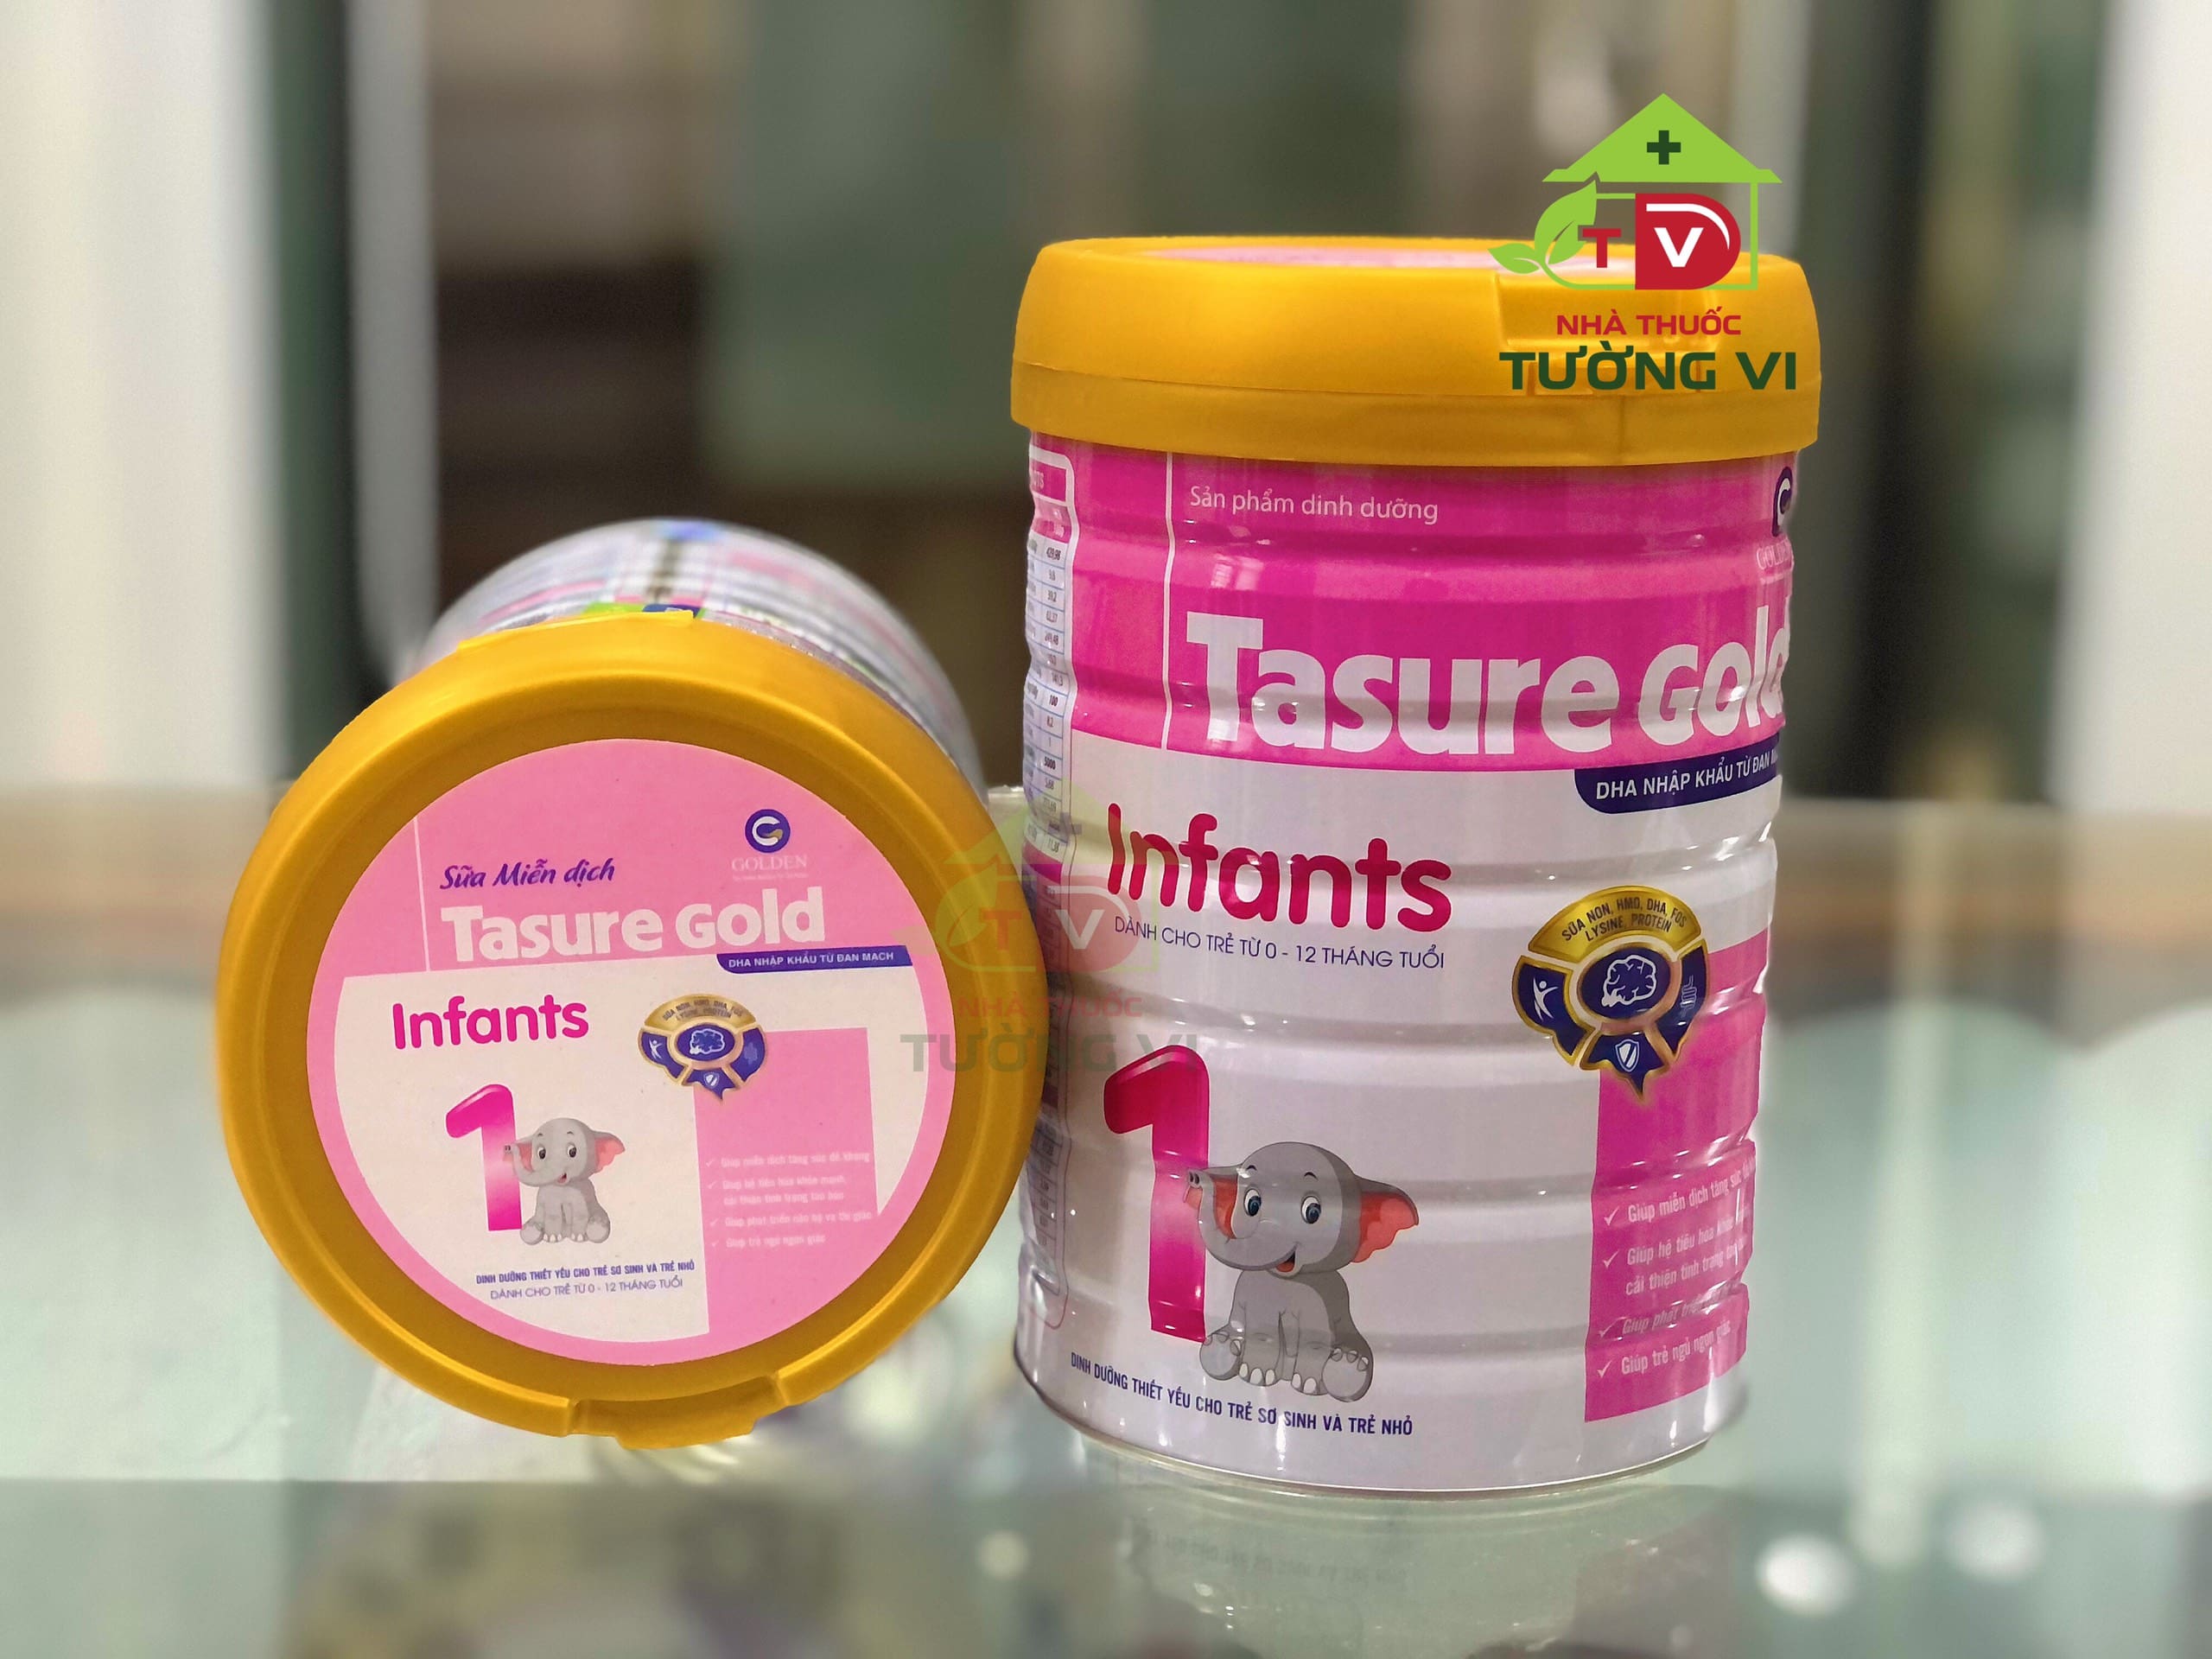 Sữa Tasure Gold Infants – Dinh dưỡng thiết yếu cho trẻ sơ sinh và trẻ nhỏ